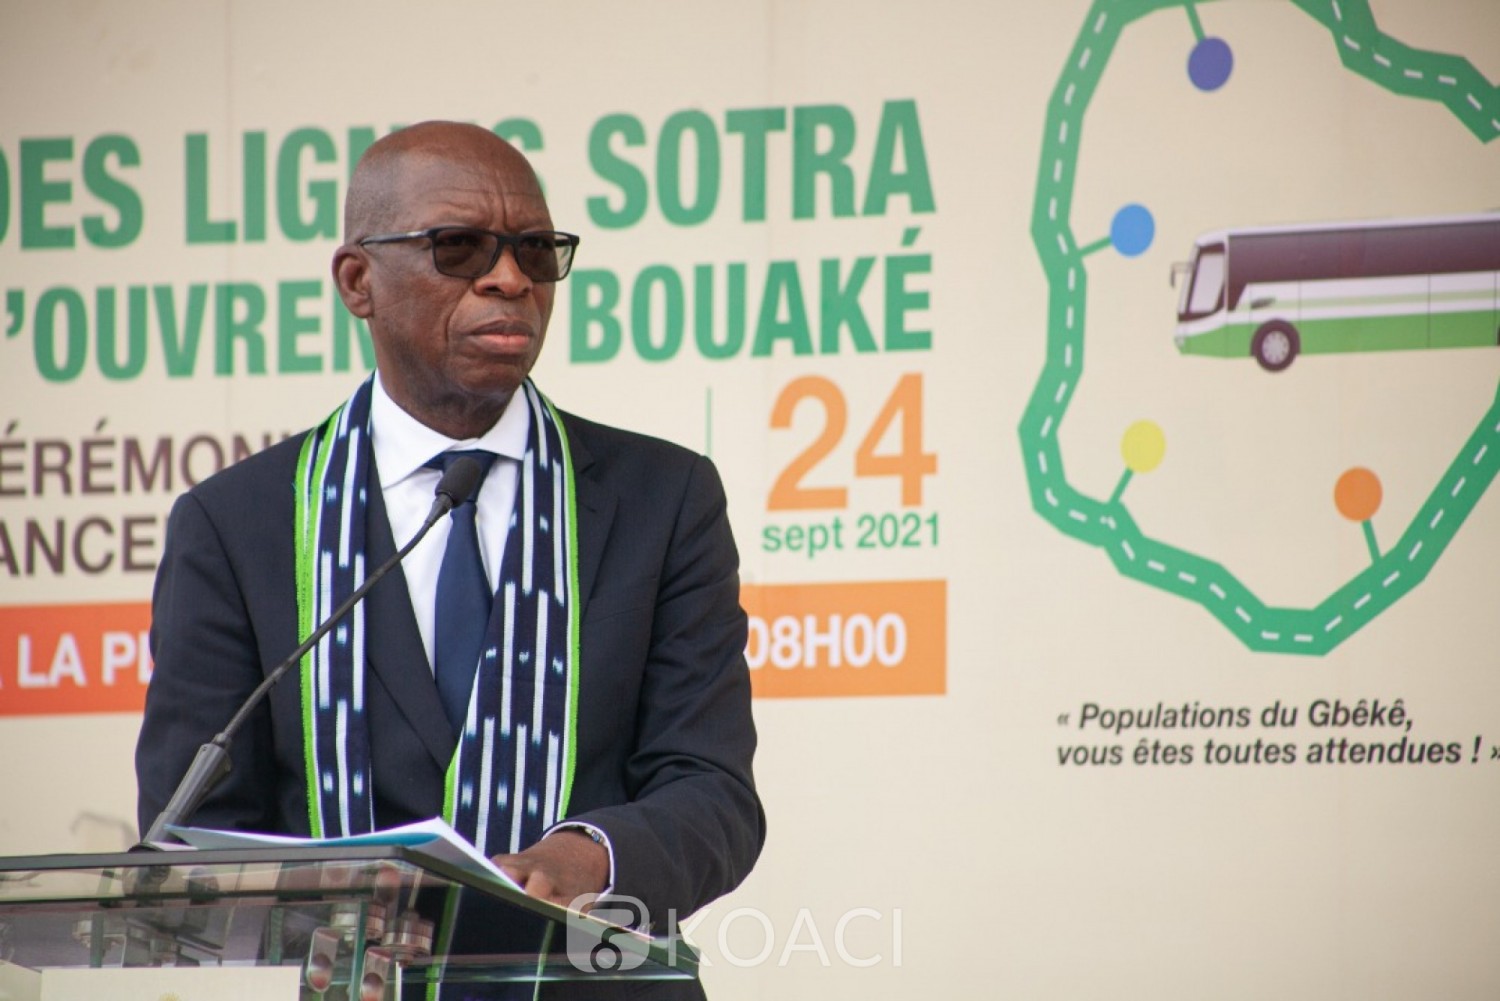 Côte d'Ivoire : Bouaké, le DG de la SOTRA espère que les bus ne seront pas vandalisés